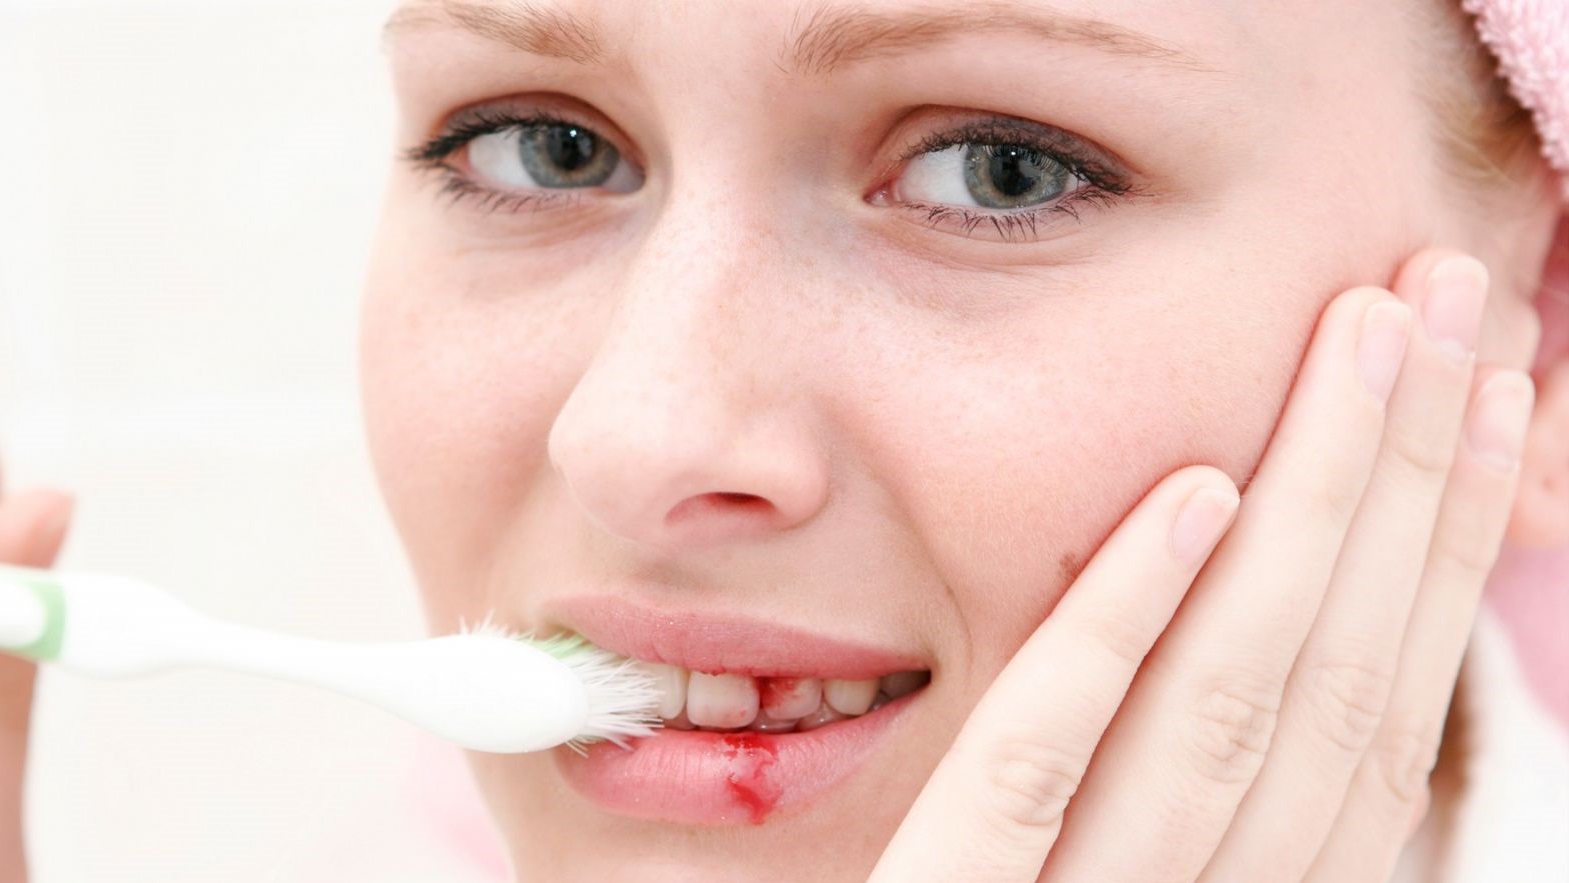   Chảy máu chân răng là bệnh gì?  